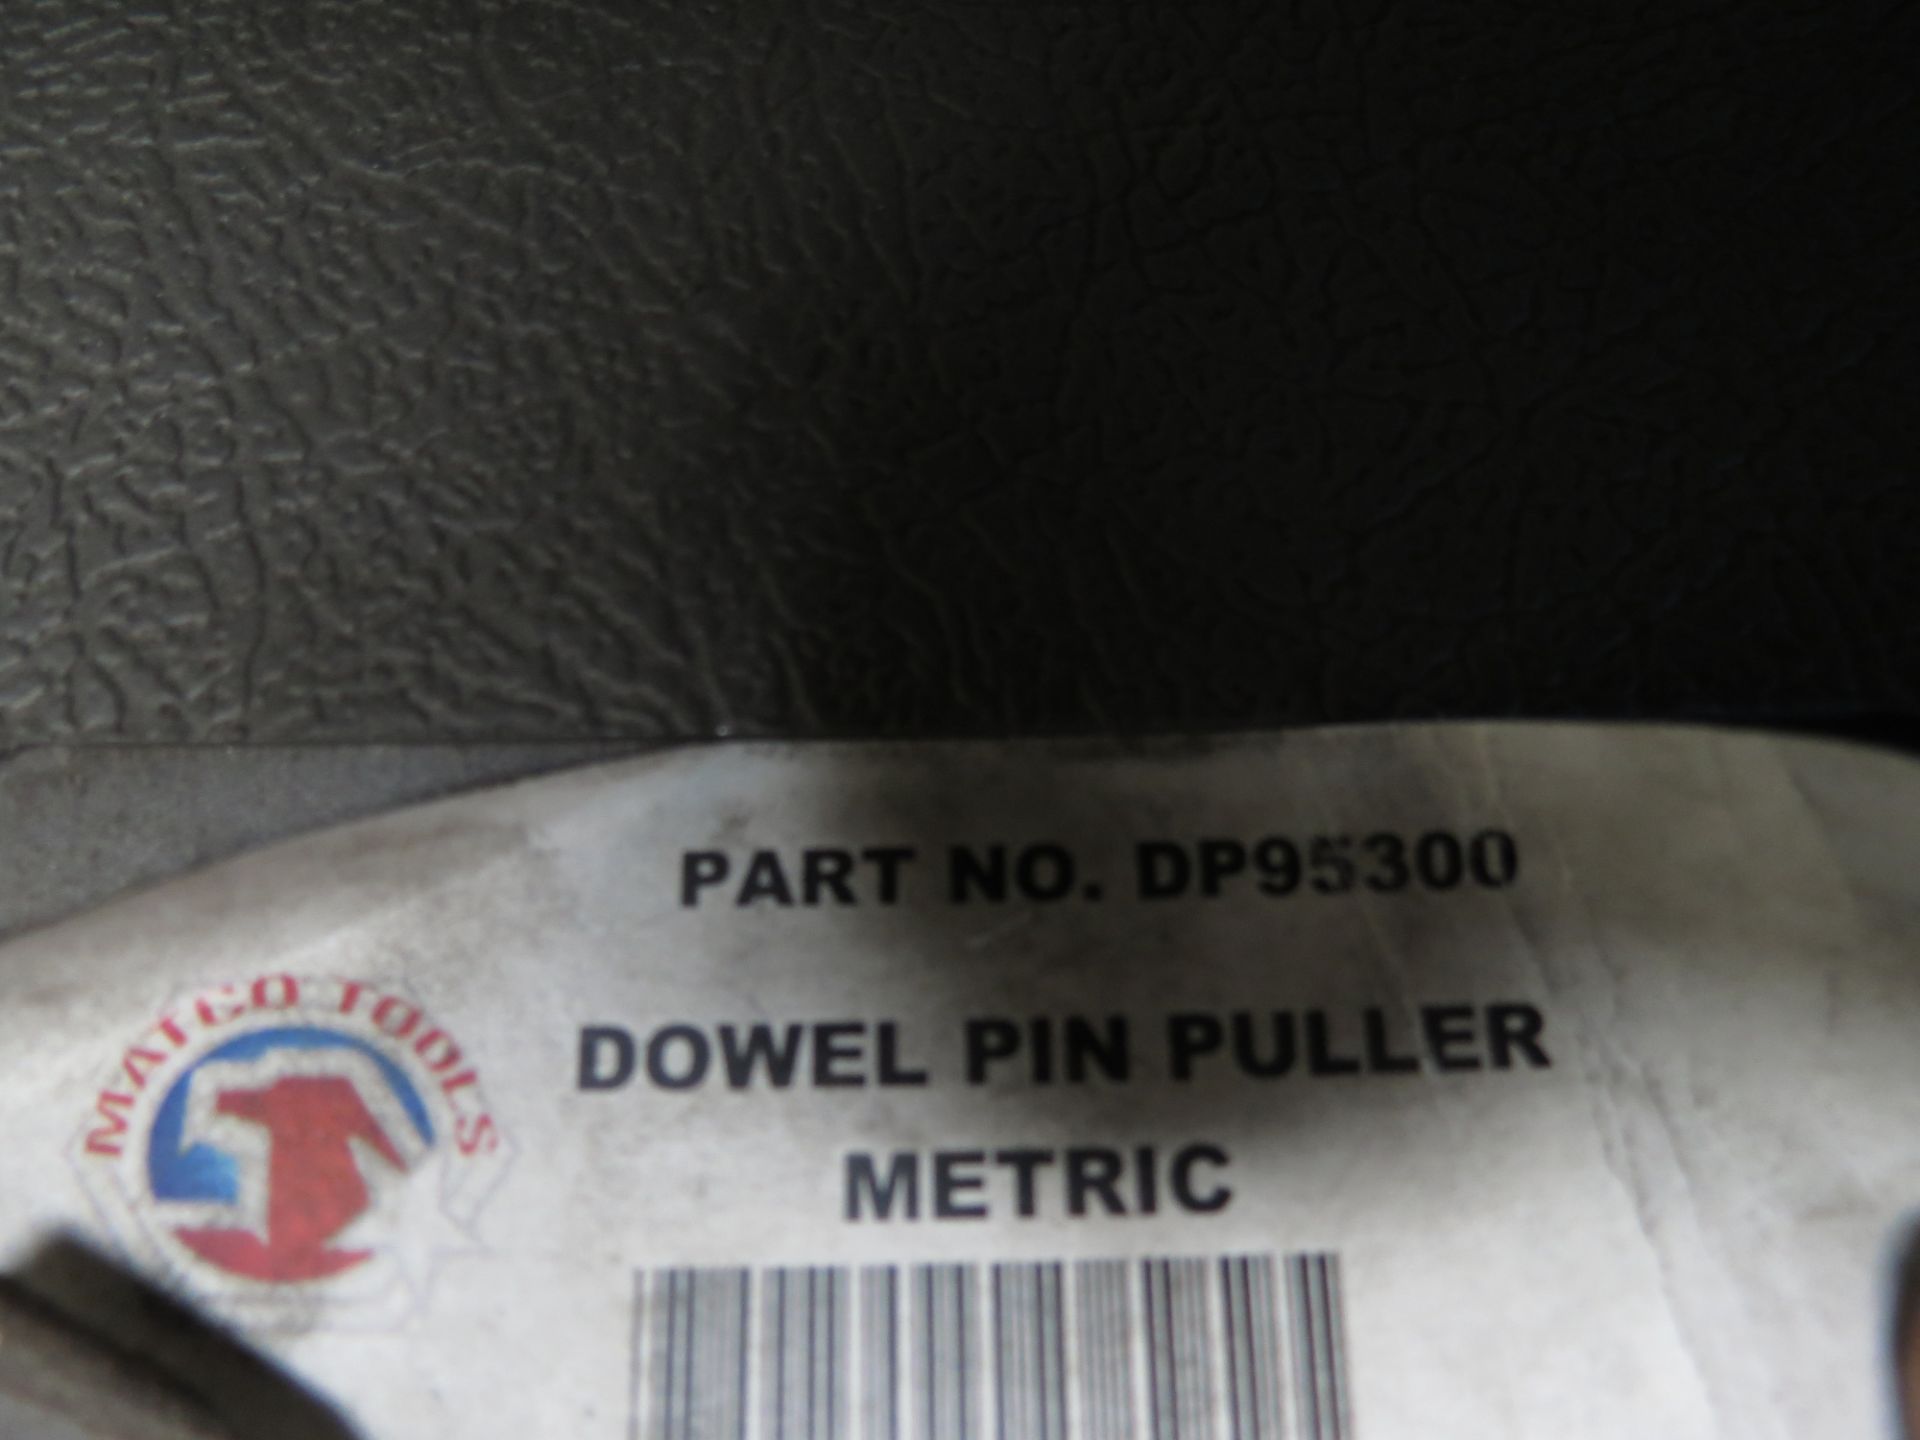 MATCO DOWEL PIN PULLER METRIC - Image 2 of 2